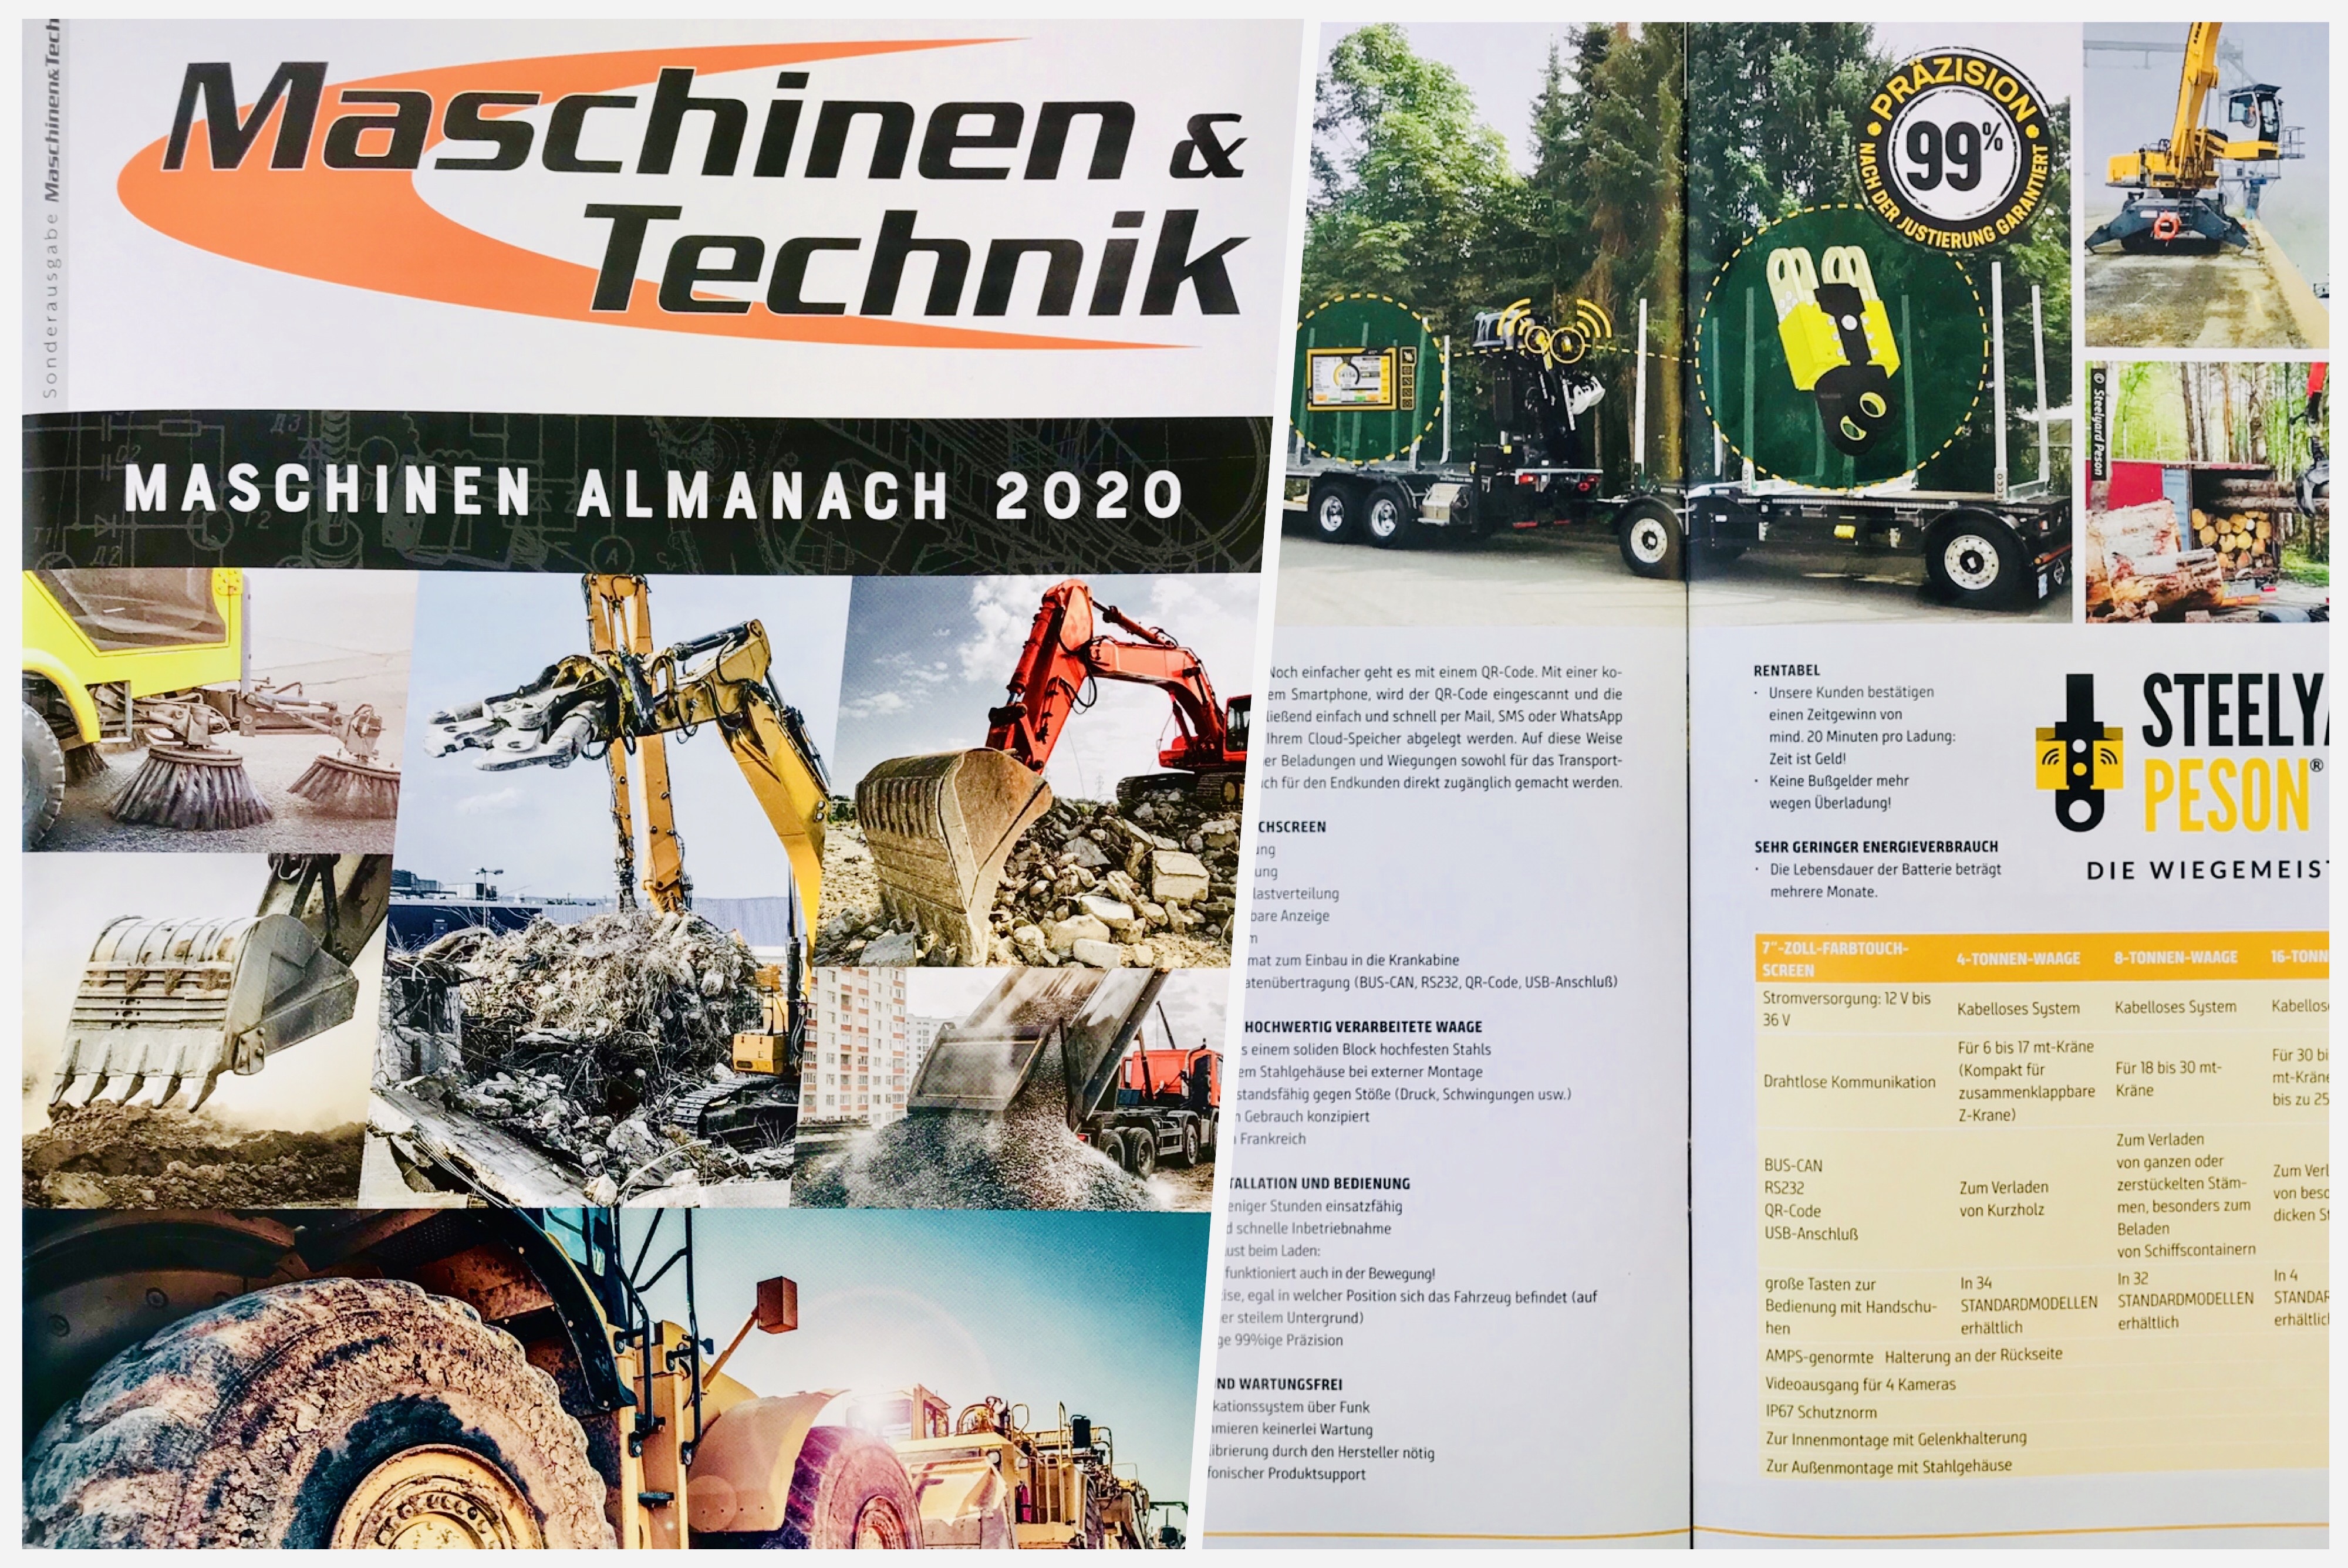 Steelyard Peson im Jahresrückblick "Maschinen Almanach 2020" vom Magazine Maschinen & Technik